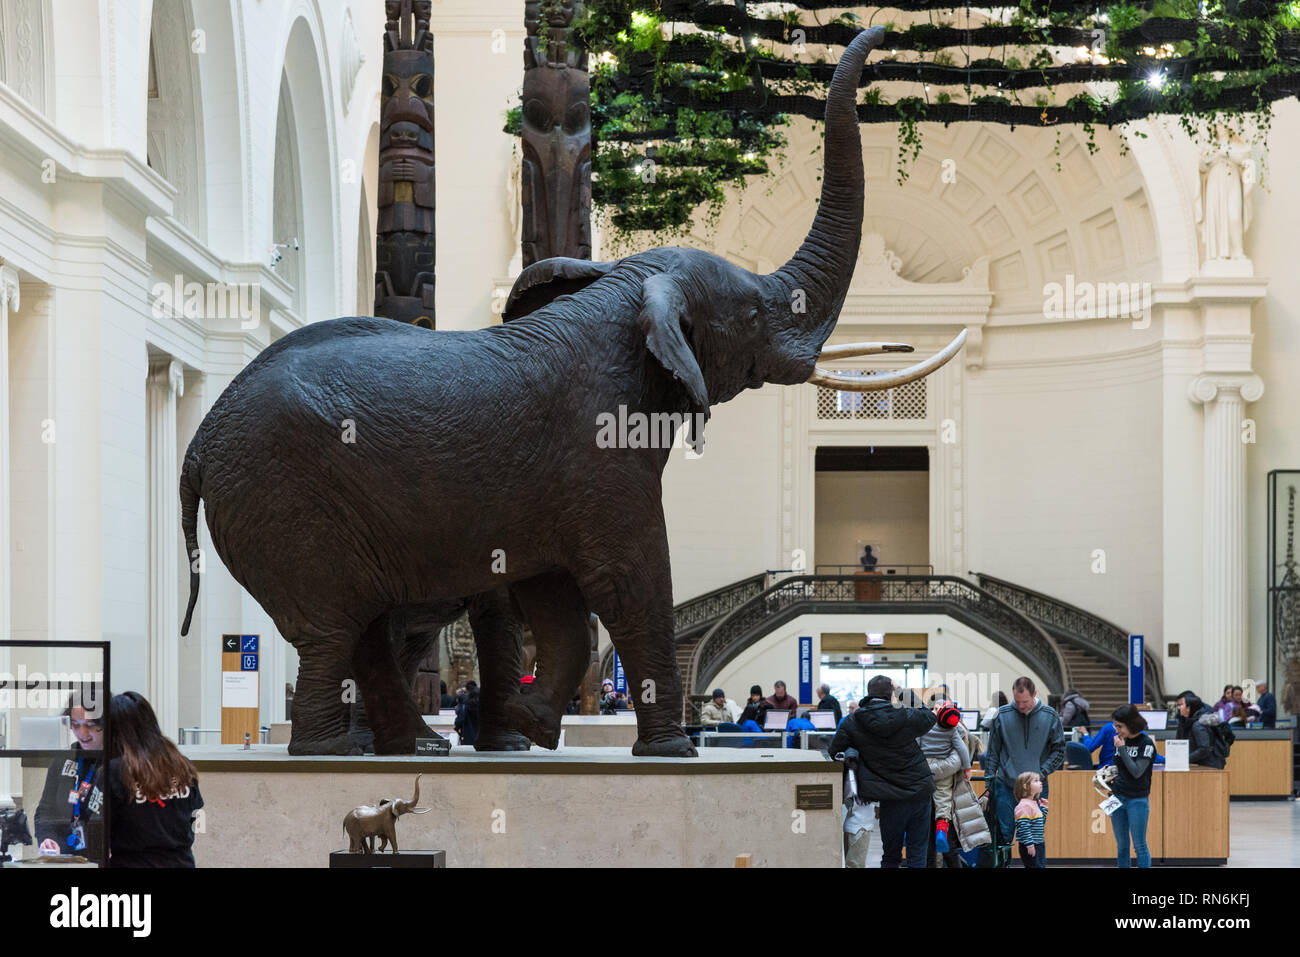 Carl Hanratty's Kampf gegen Afrikanische Elefanten taxidermy im Display auf der Innenseite der Halle, Field Museum, Chicago, Illinois, USA. Stockfoto